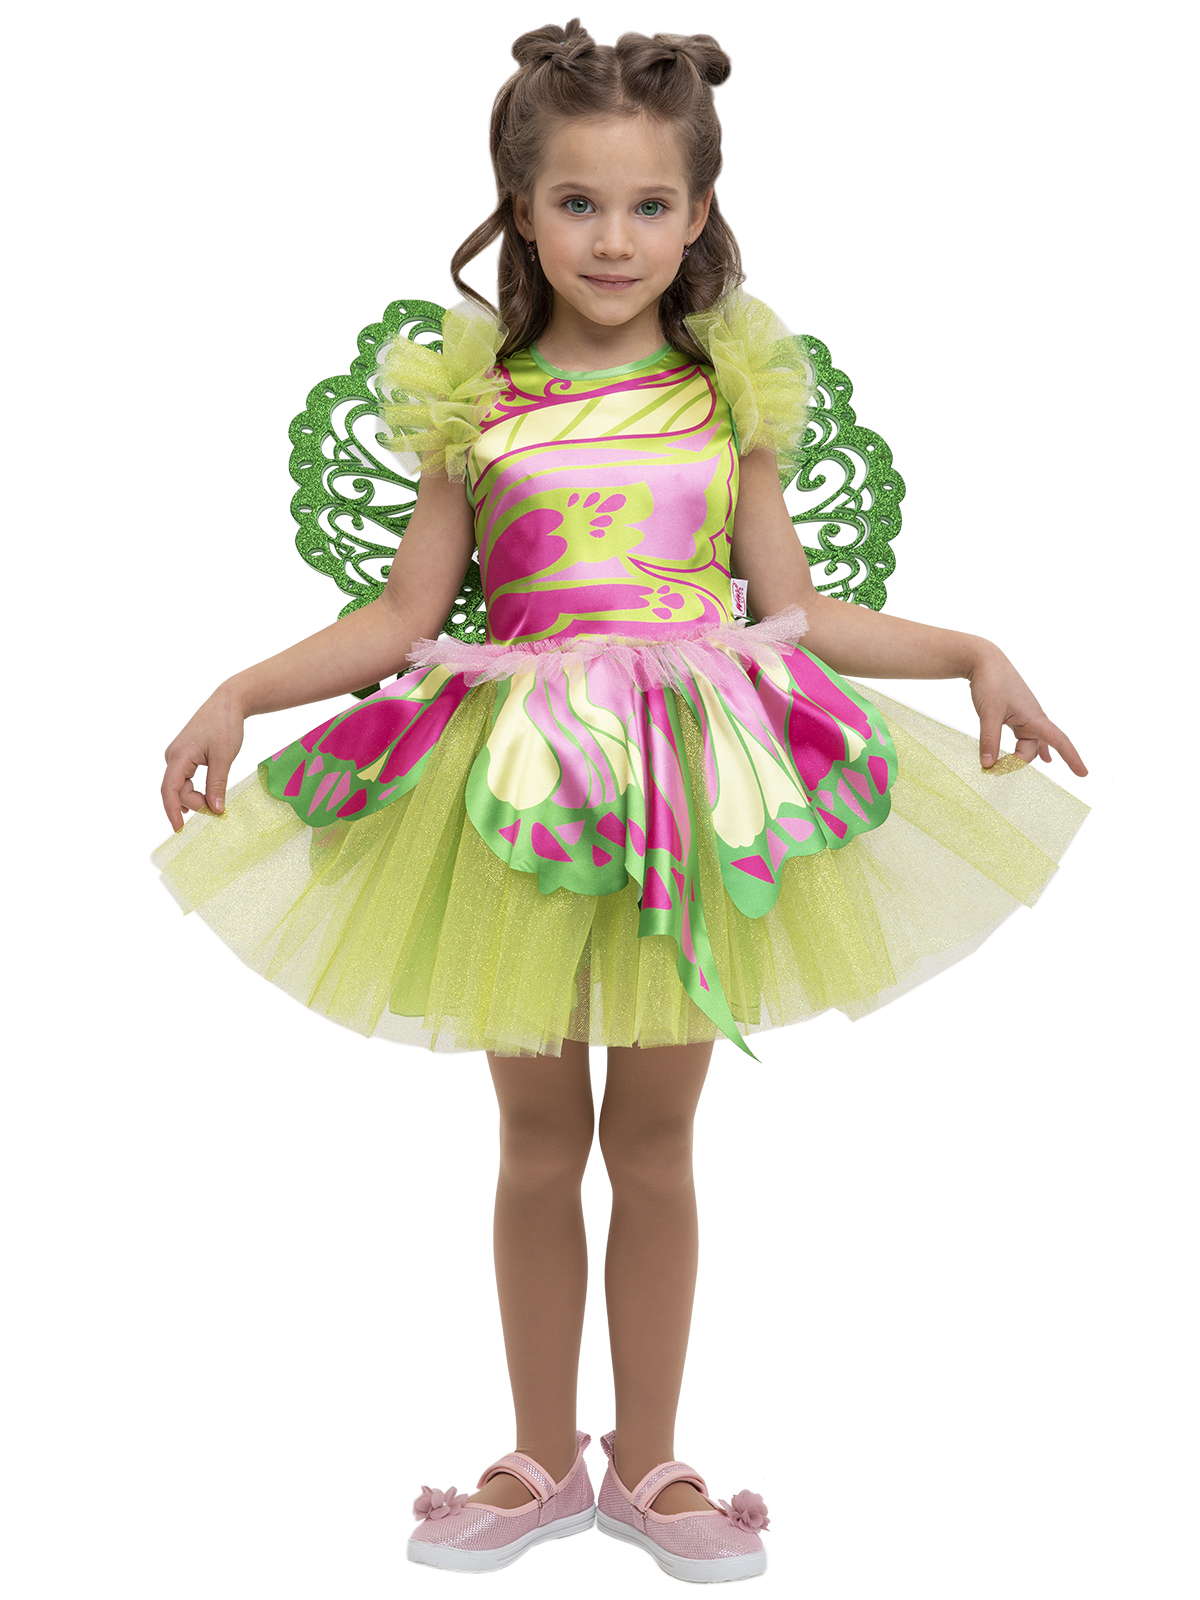 Карнавальный костюм детский Вестифика Костюм Винкс, зеленый,розовый, 104 музыкальный инструмент глюкофон зеленый 8 лепестков 15 х 9 см